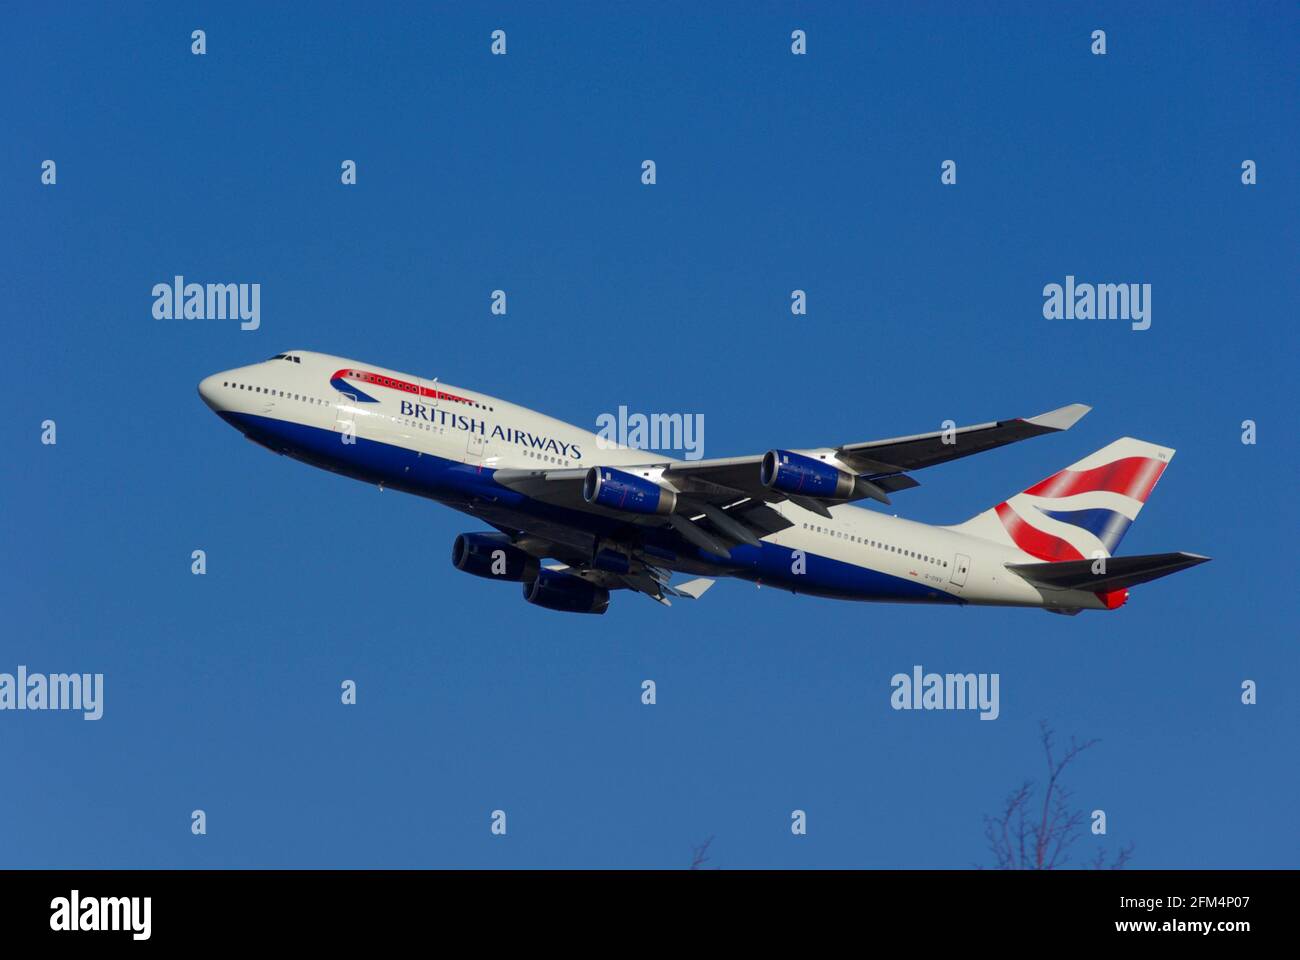 British Airways Boeing 747 Jumbo Jet Airliner aereo G-CIVV decollo dall'aeroporto di Londra Heathrow, Regno Unito, in cielo azzurro Foto Stock